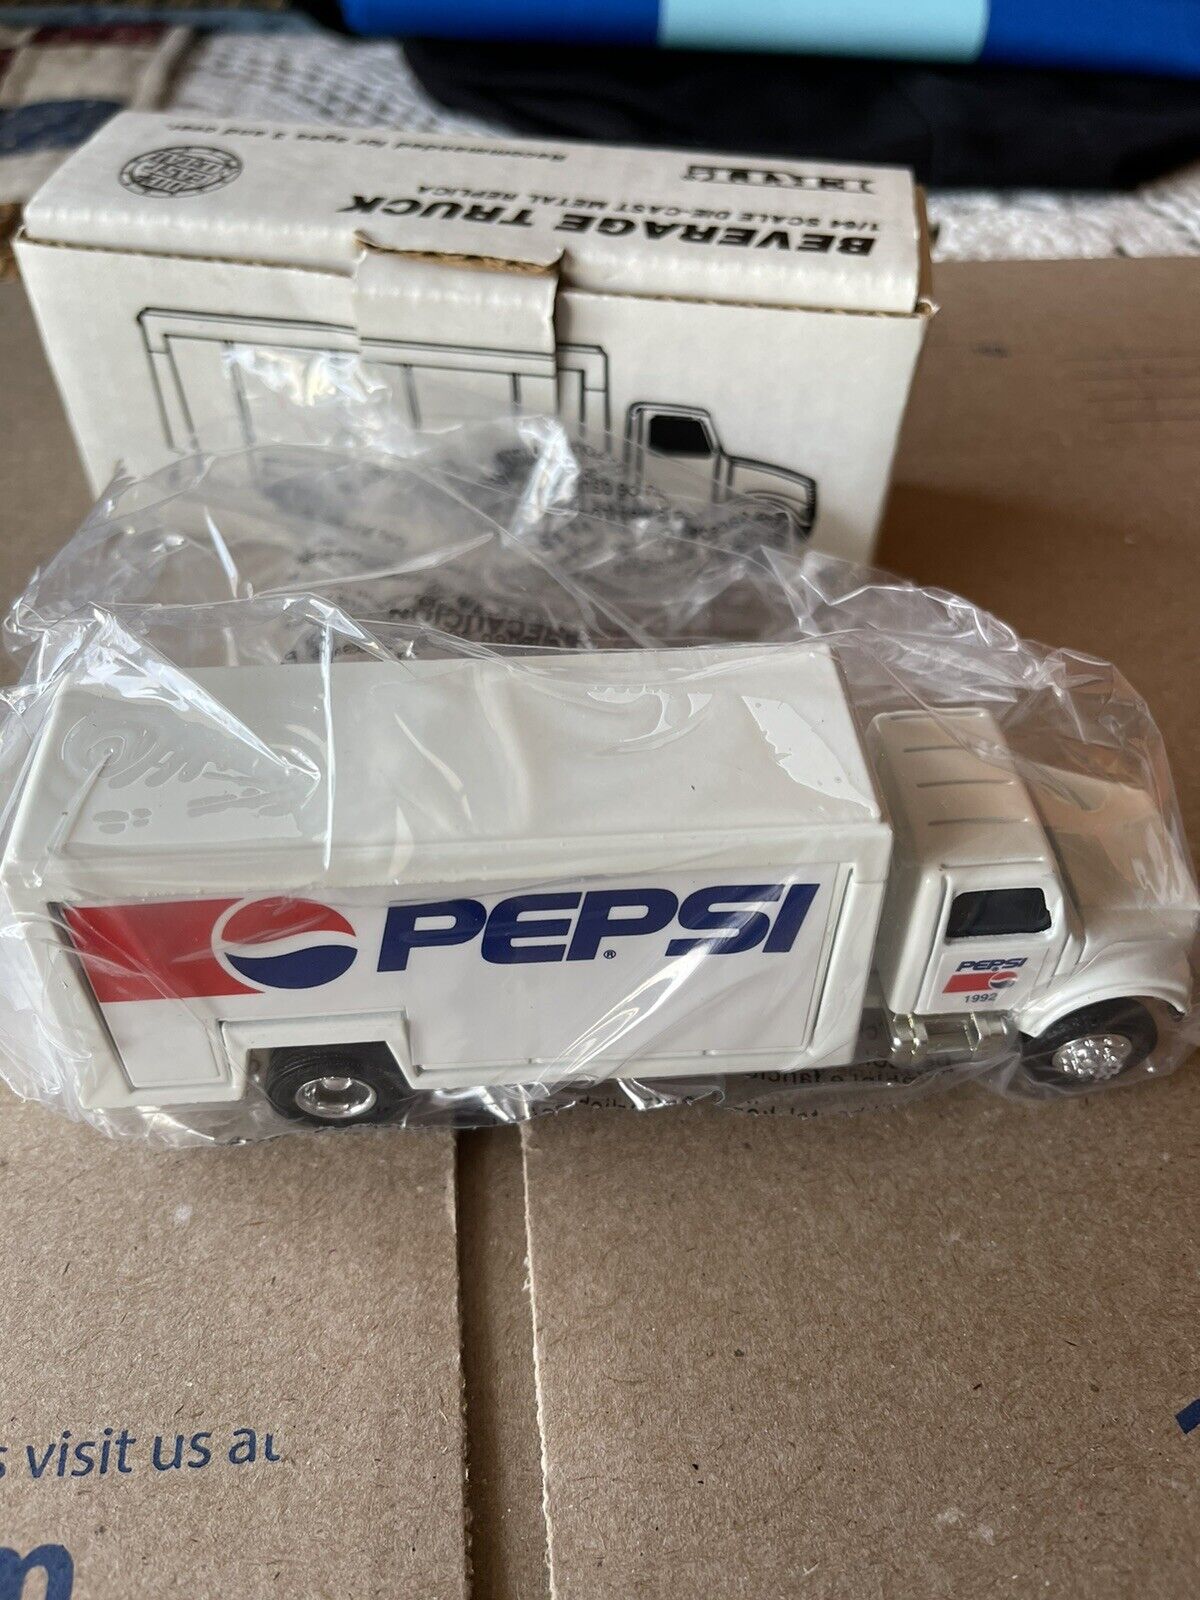 1/64 Ertl Die-cast Metal Diet Pepsi Beverage Truck (#9376) 1992 Collector Nib!